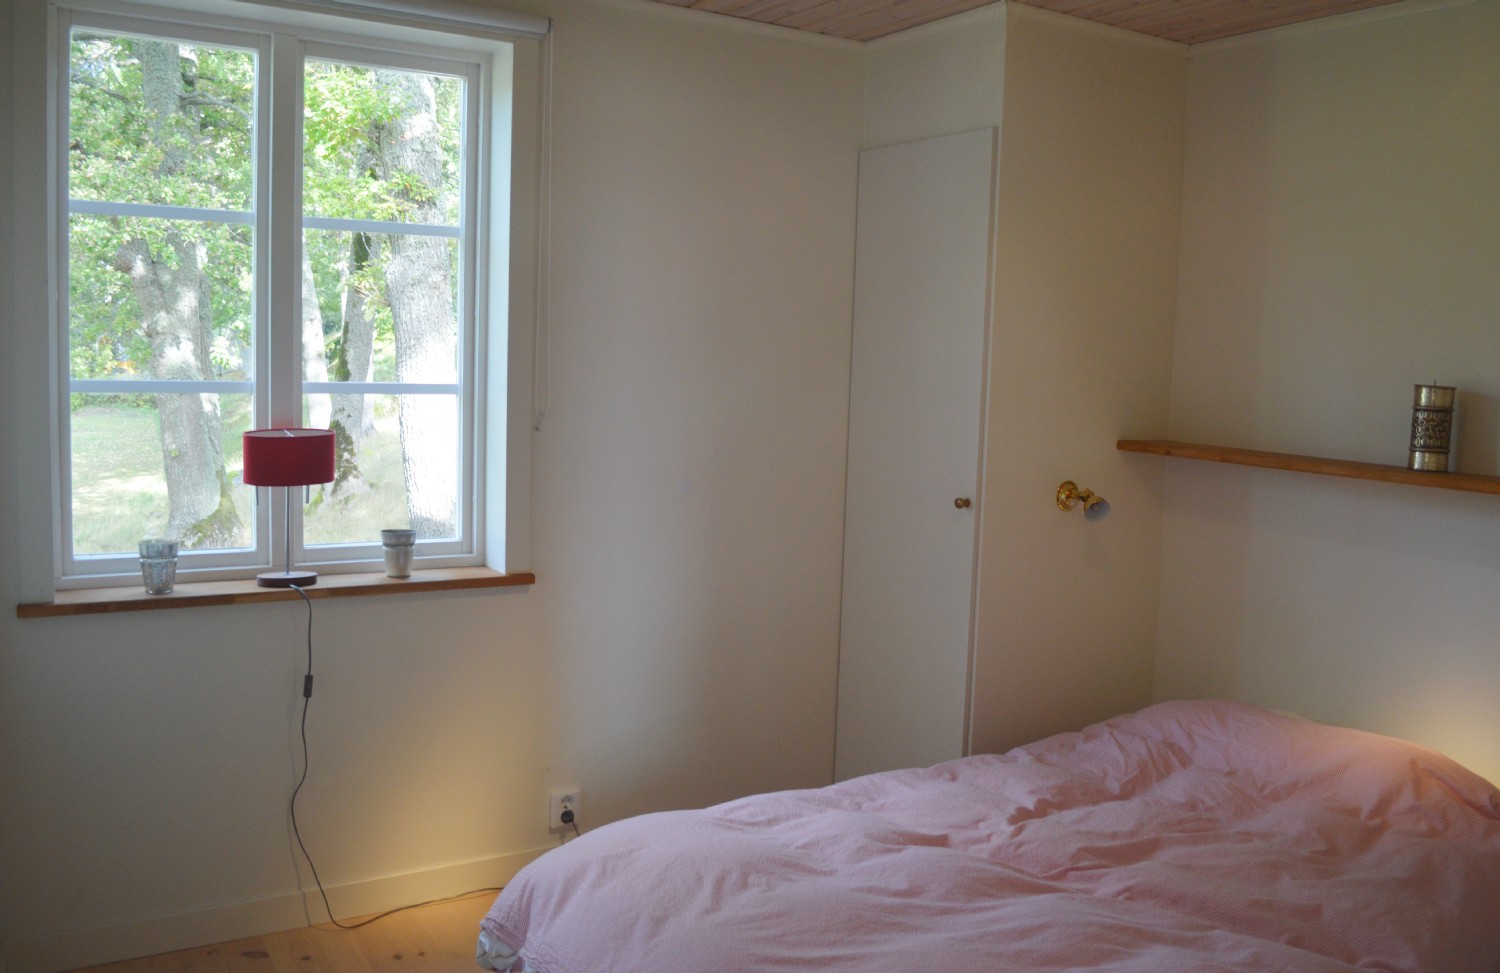 Sovrum 1 dubbelsäng 160x200 cm n.v./ Bed room 1 double bed 160x200 cm. Entrance floor 